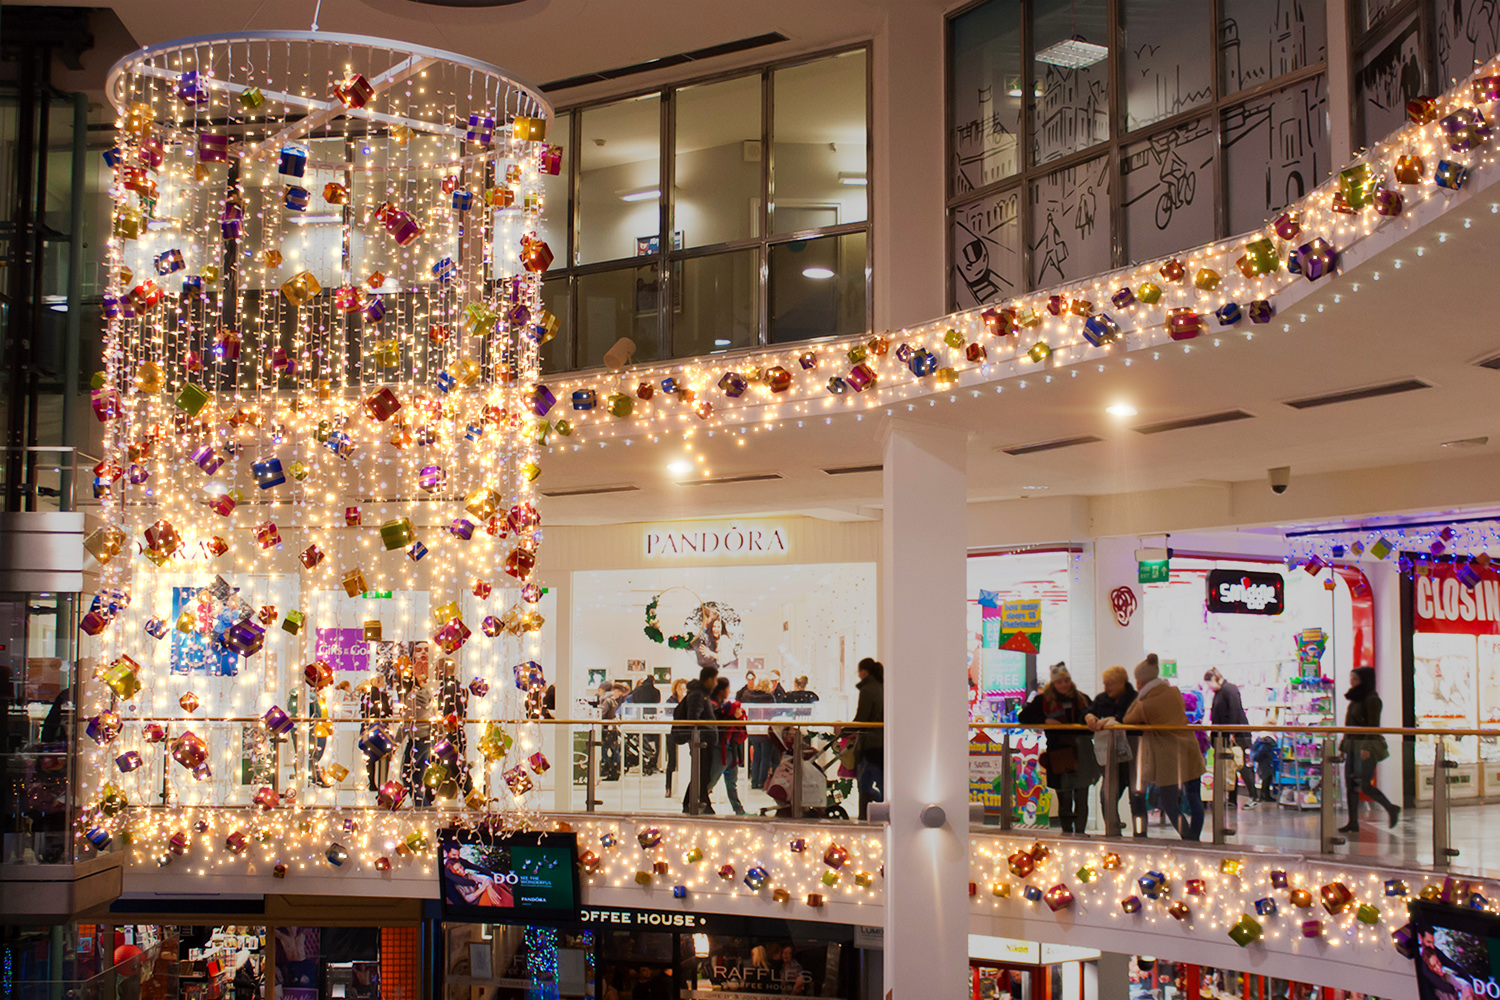 Shopping Centre festive lighting hanging